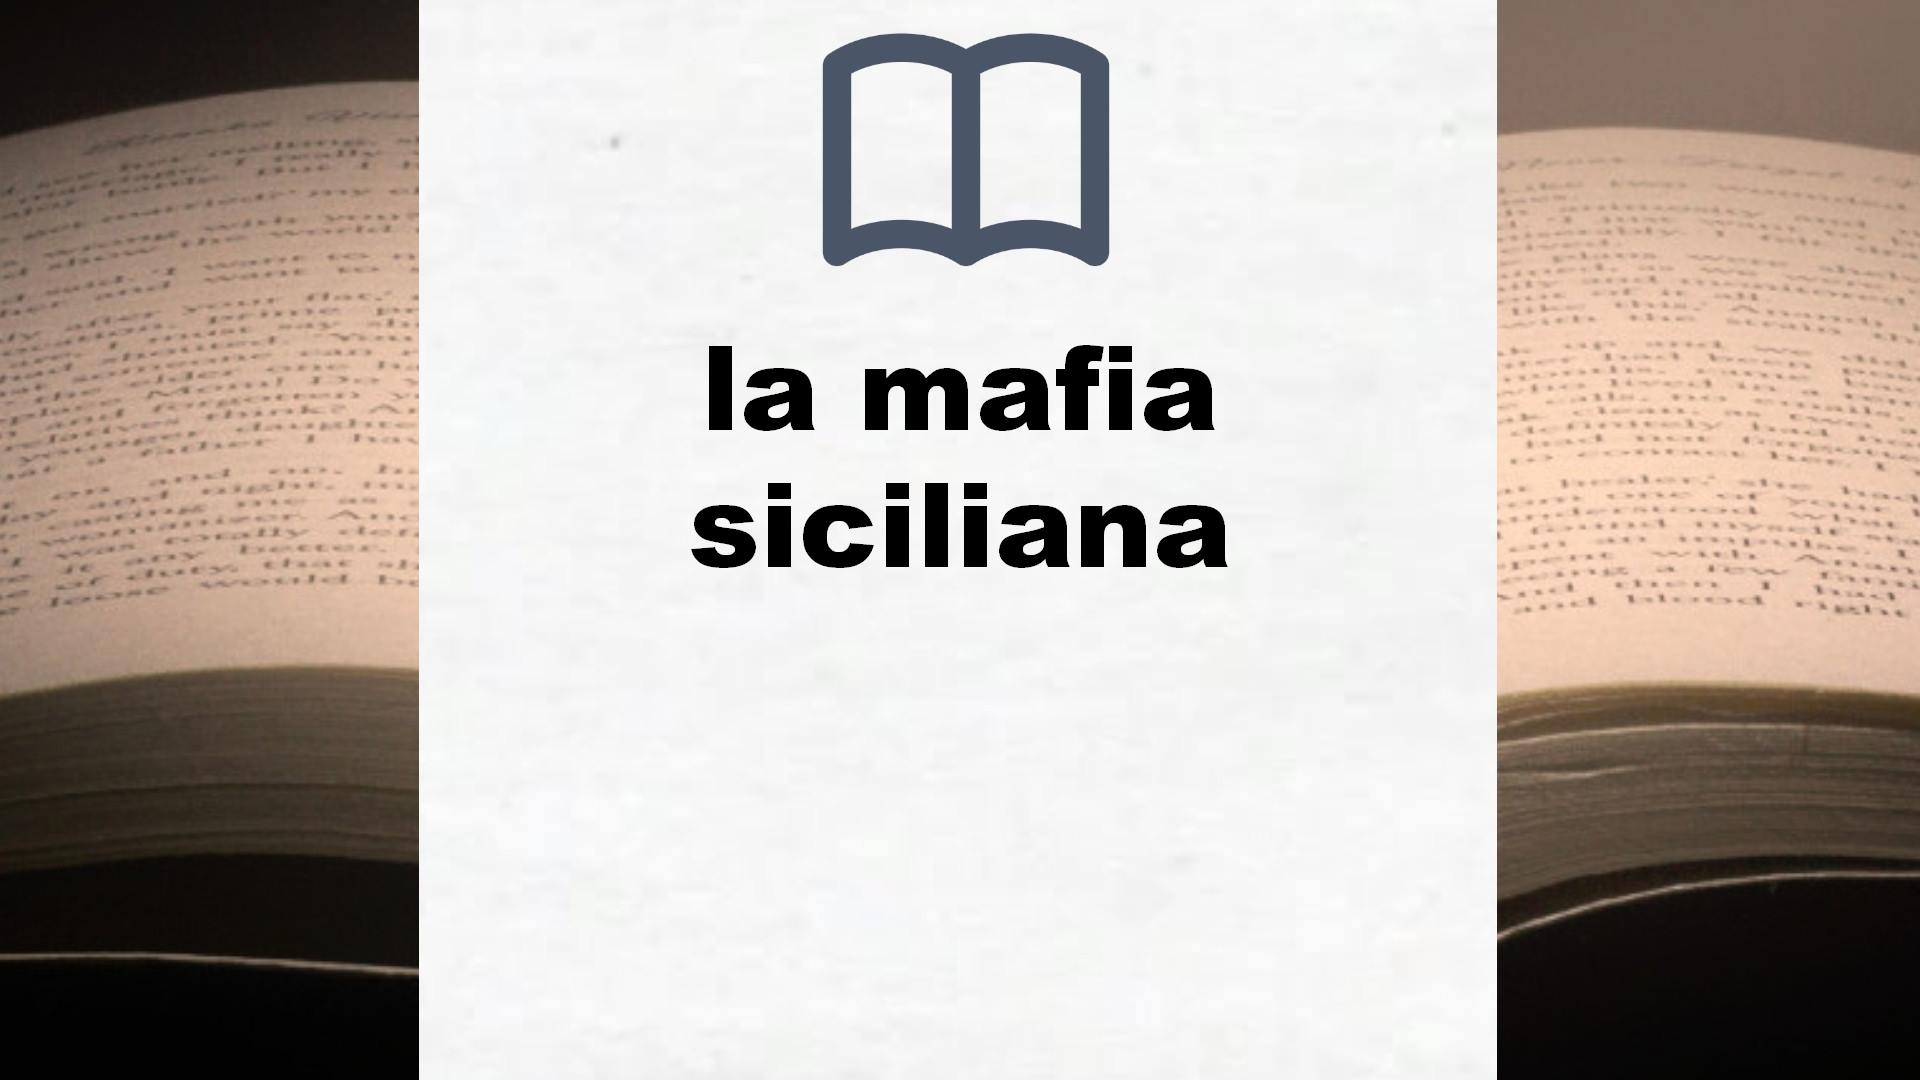 Libros sobre la mafia siciliana